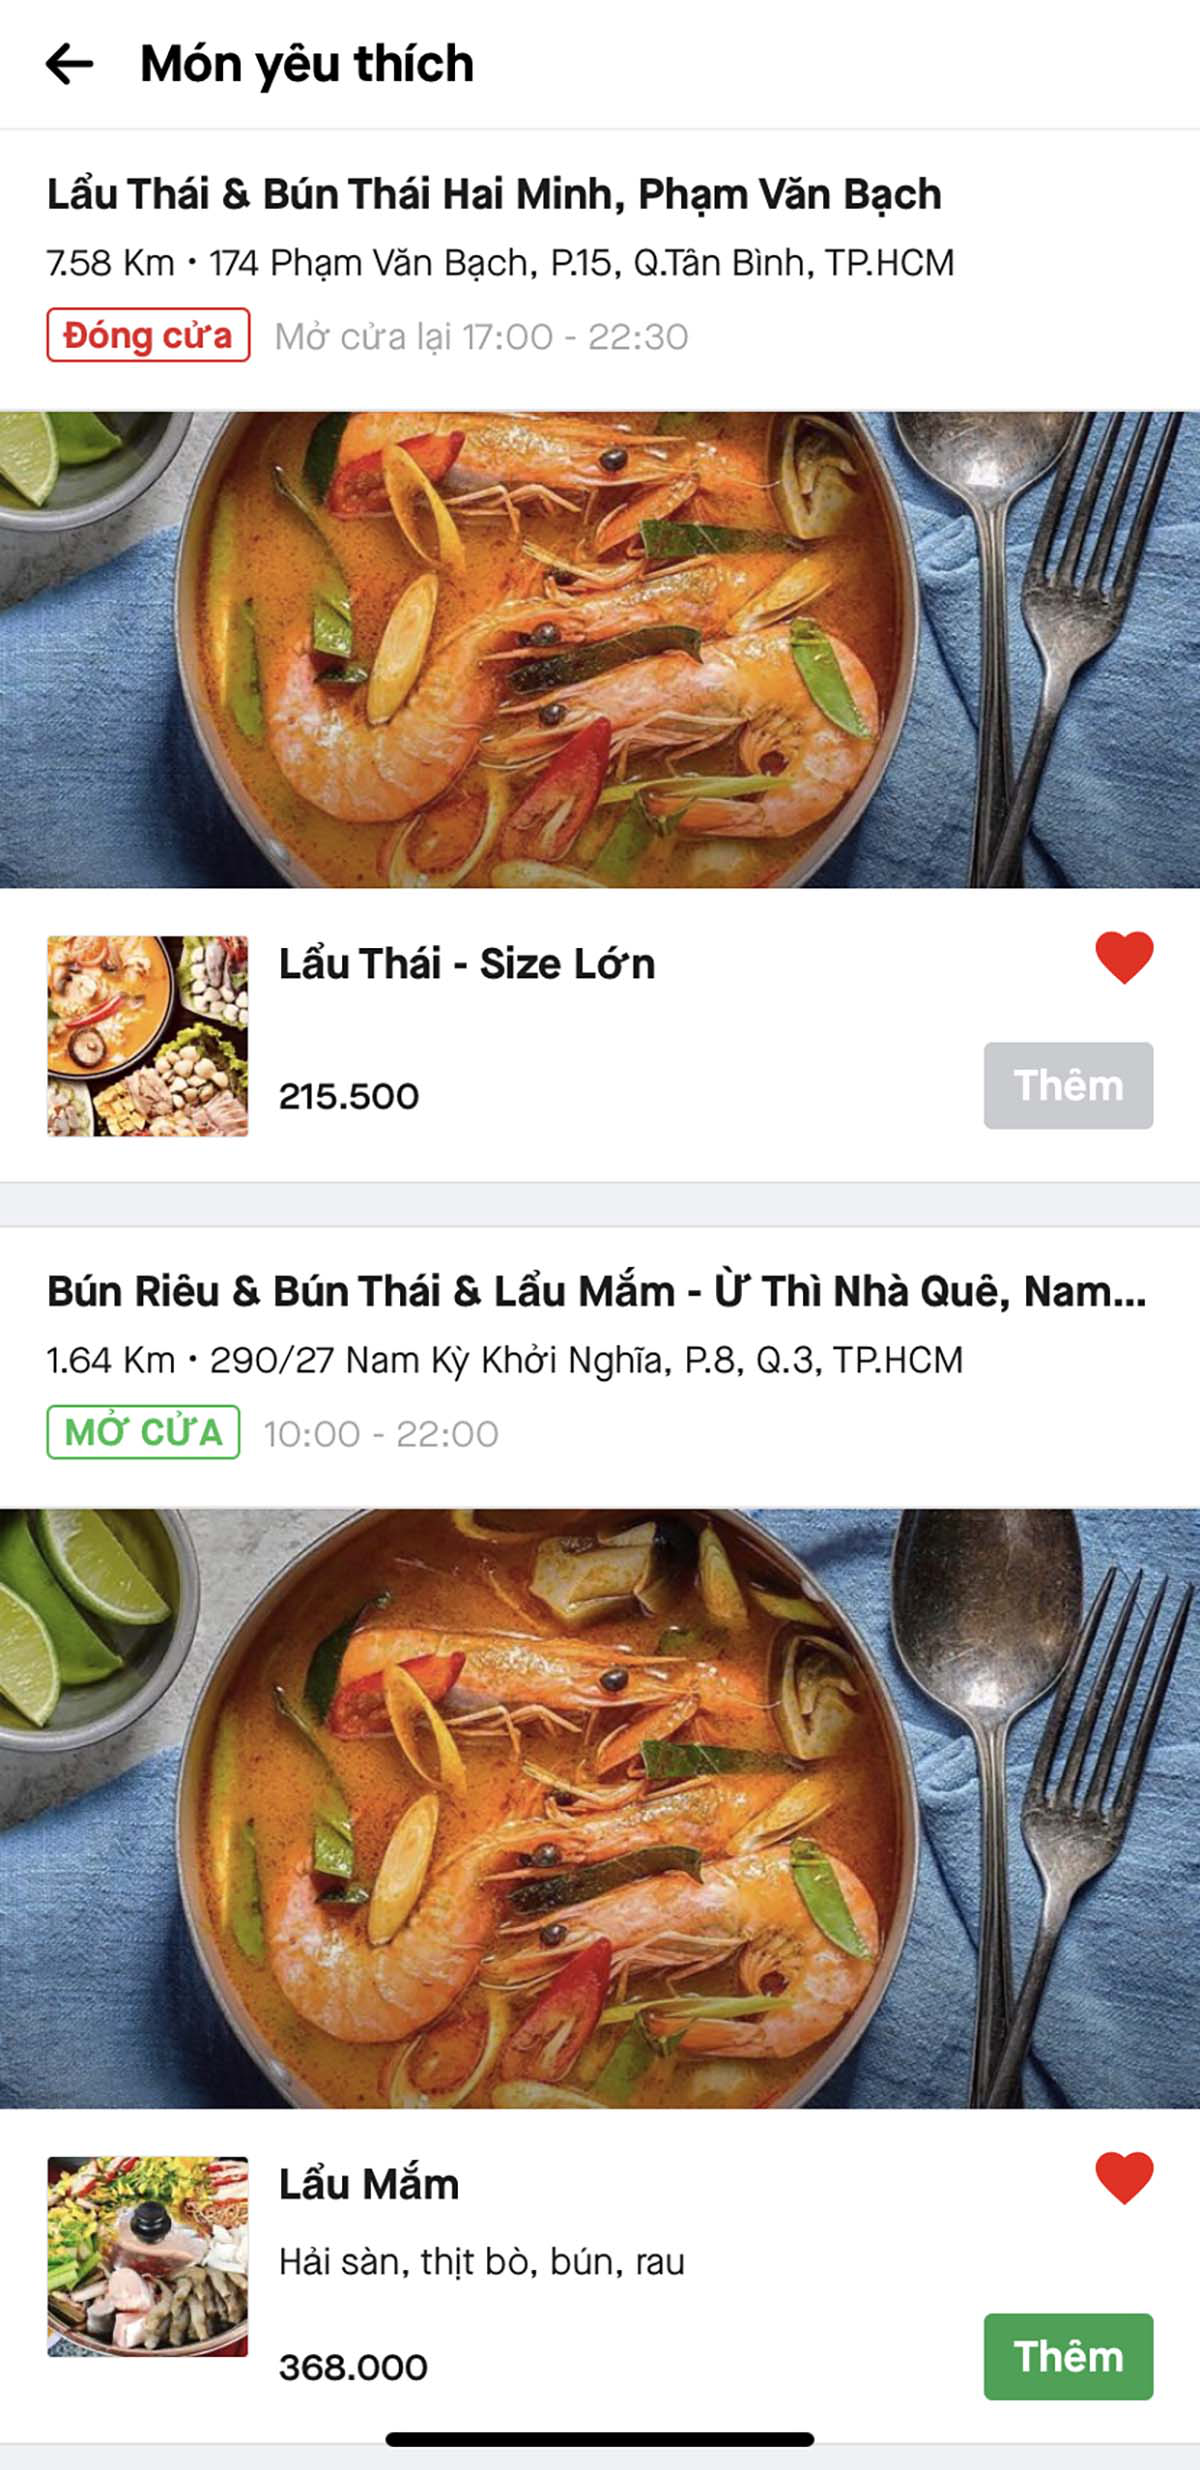 Giờ đây, tất cả các món lẩu có thể dễ dàng tìm kiếm trên ứng dụng đặt món trực tuyến như Gojek